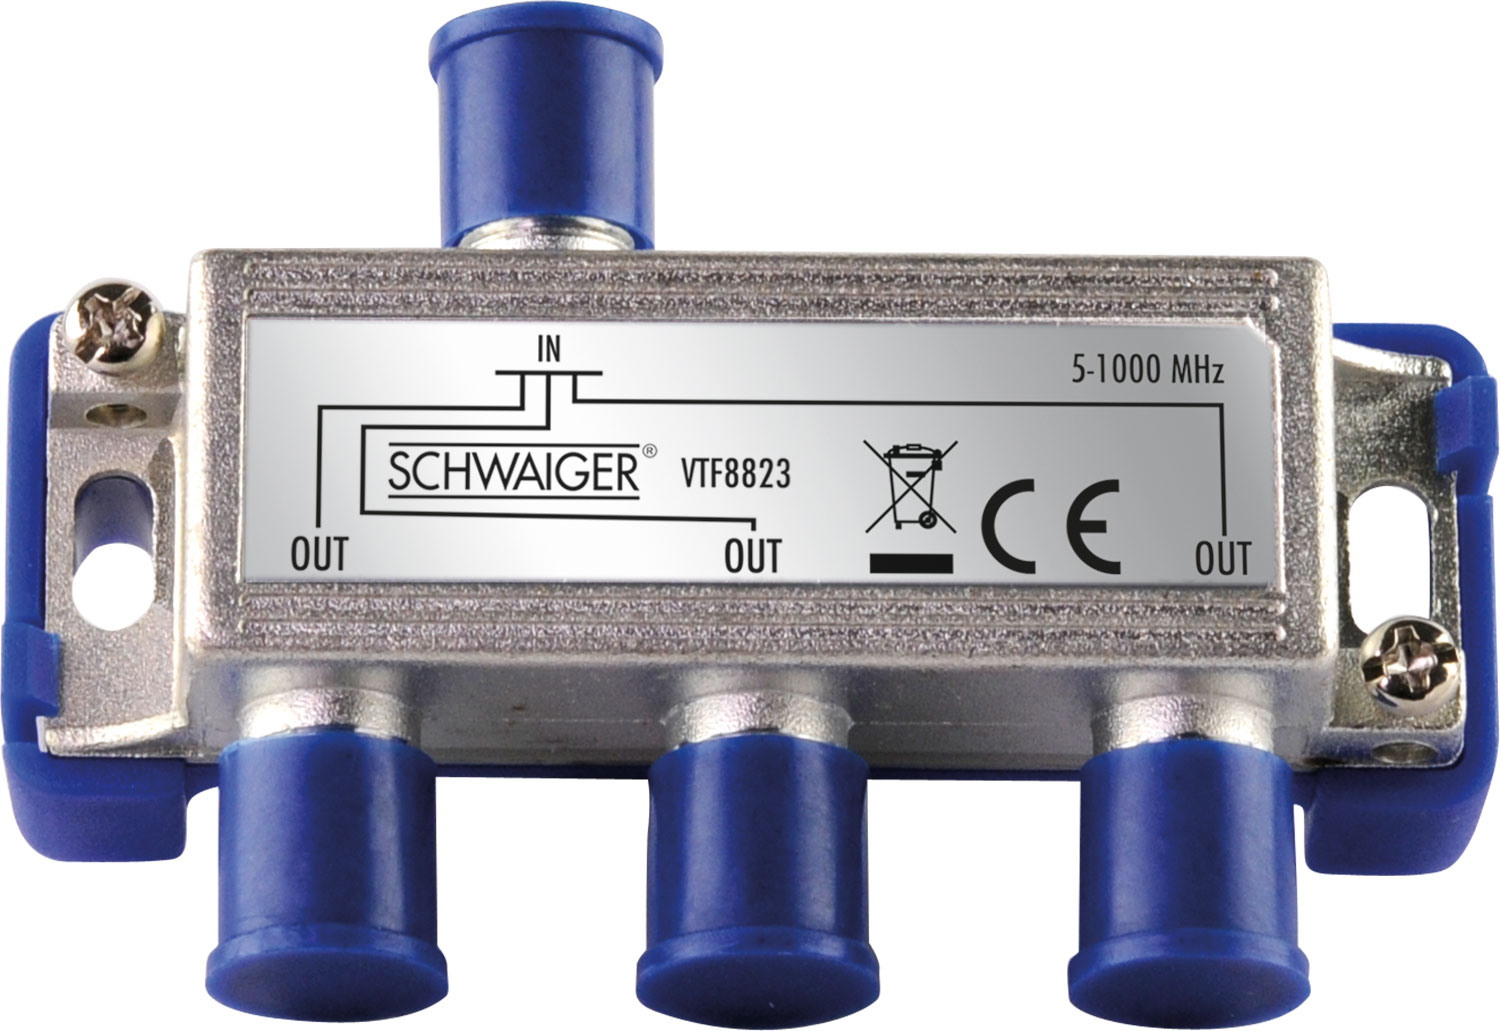 SCHWAIGER -VTF8823 241- 3-fach und für dB) Antennenanlagen Kabel- Verteiler (6.5